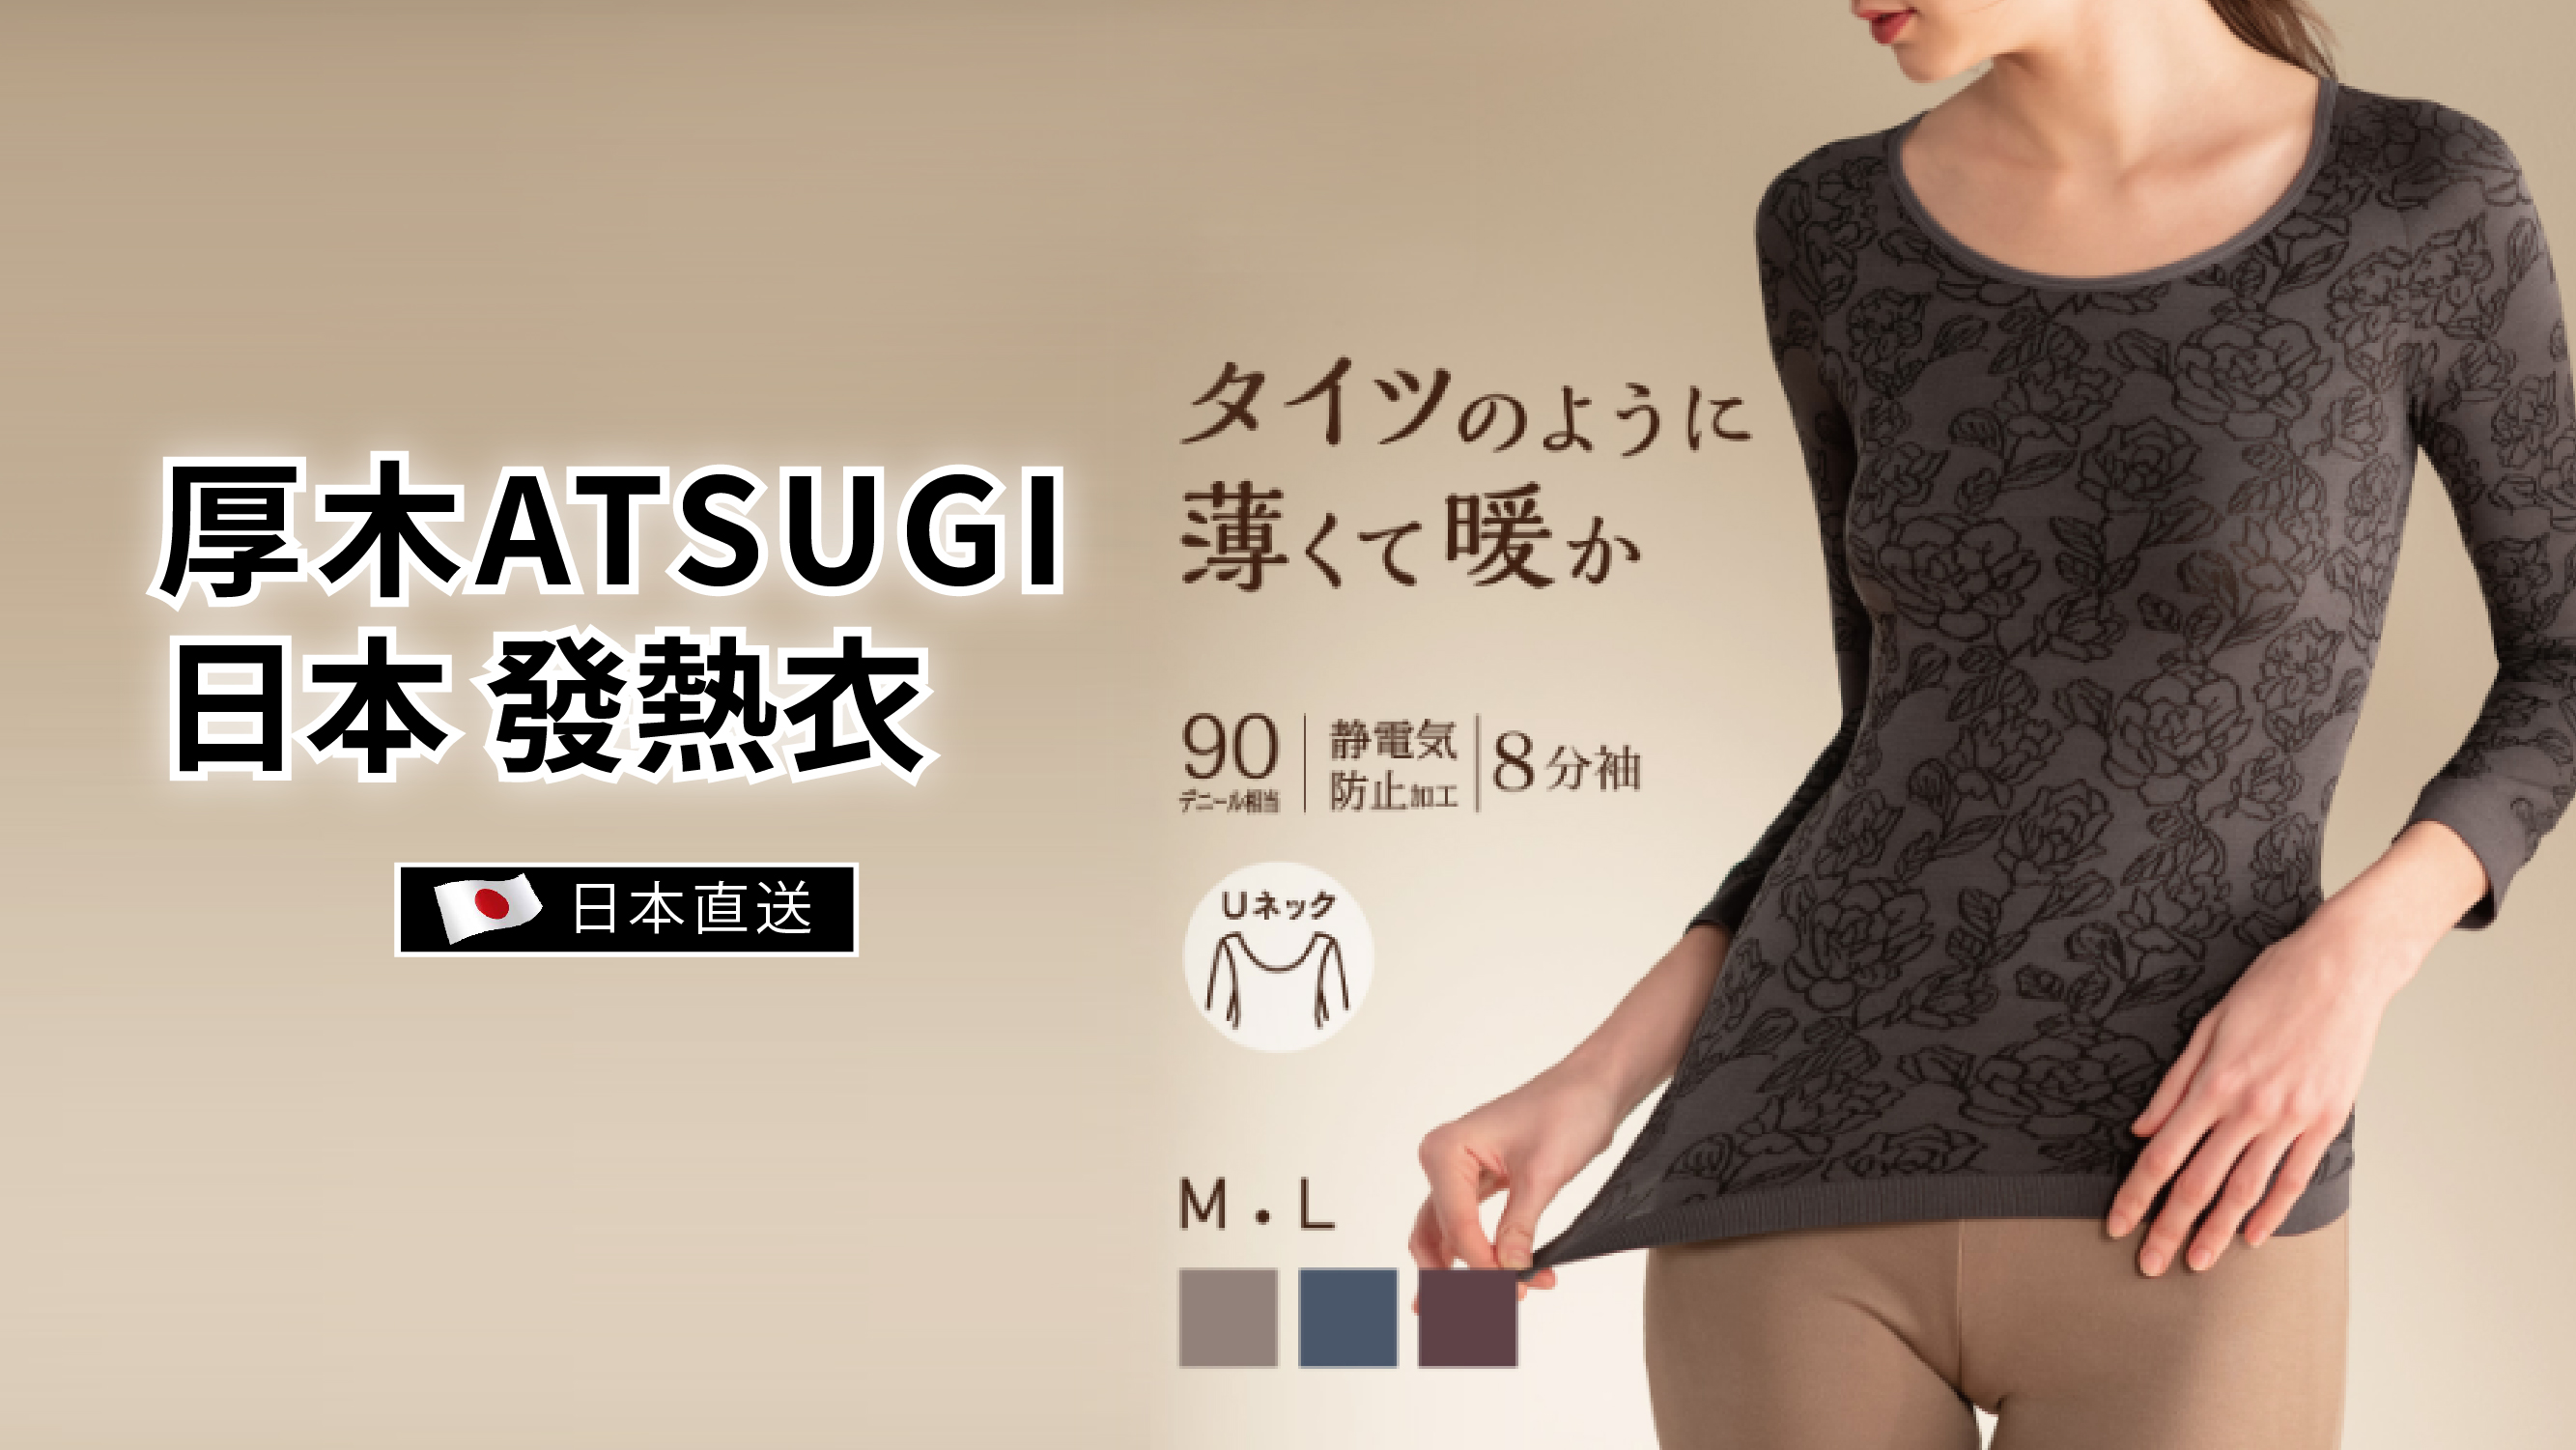 Atsugi ATSUGI Japan Anti-static heating jacket for women with rose pattern